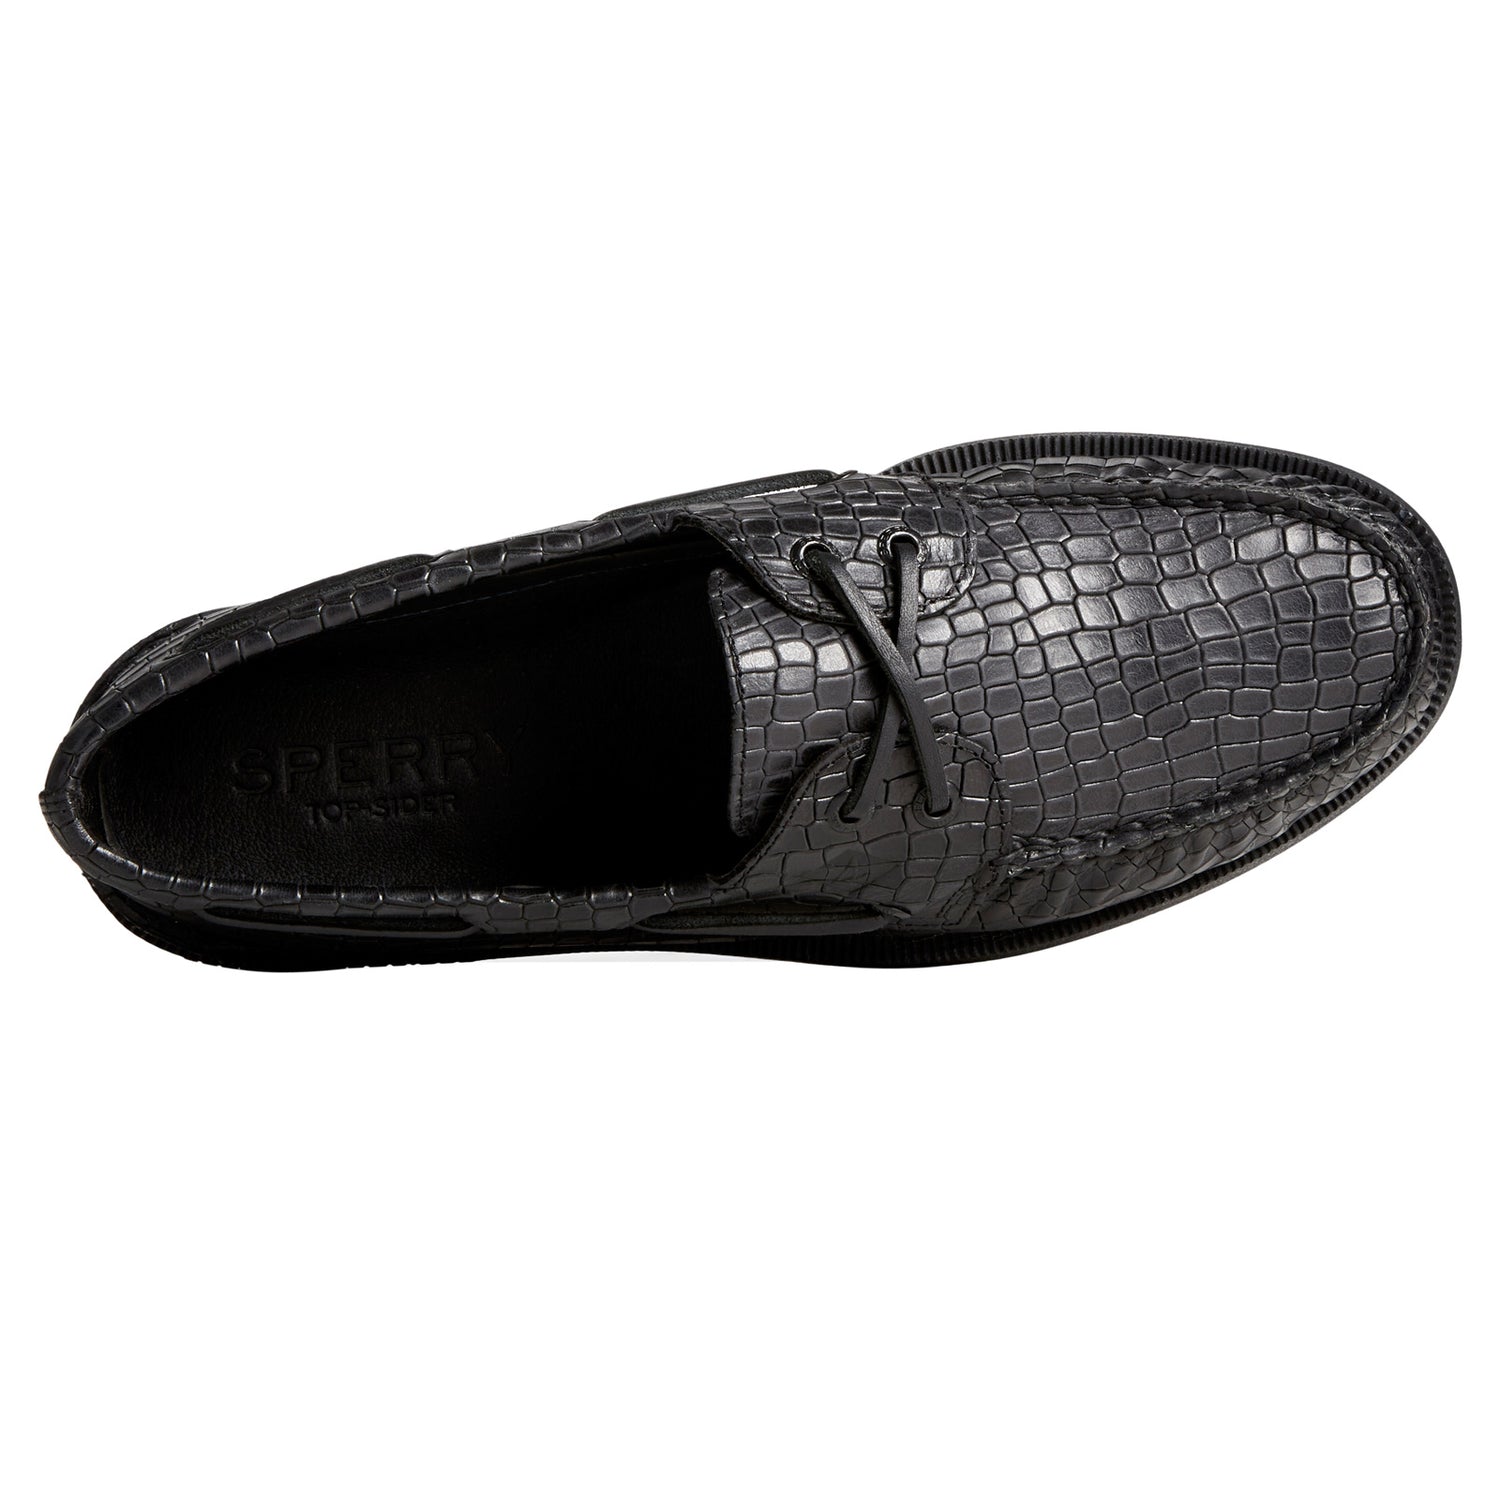 Peltz Shoes  Men's Sperry Authentic Original Boat Shoe Black Croc STS25289